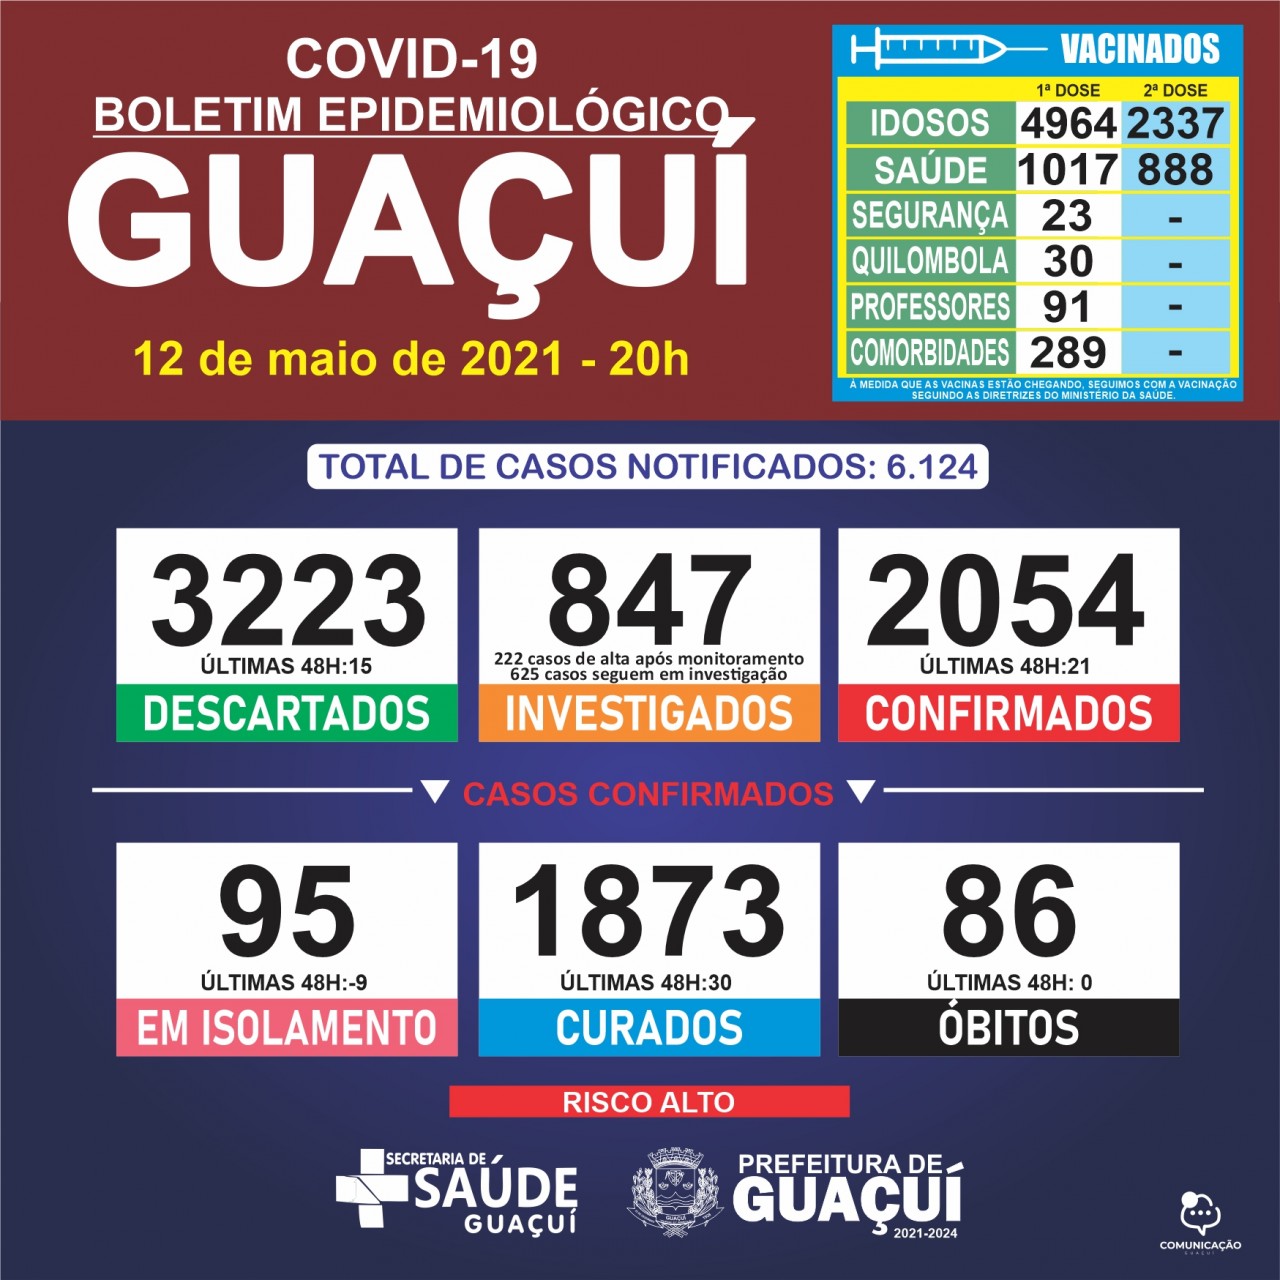 Boletim Epidemiológico 12/05/21: Guaçuí registra 21 casos confirmados e 30 curados de Covid-19 nas últimas 48 horas